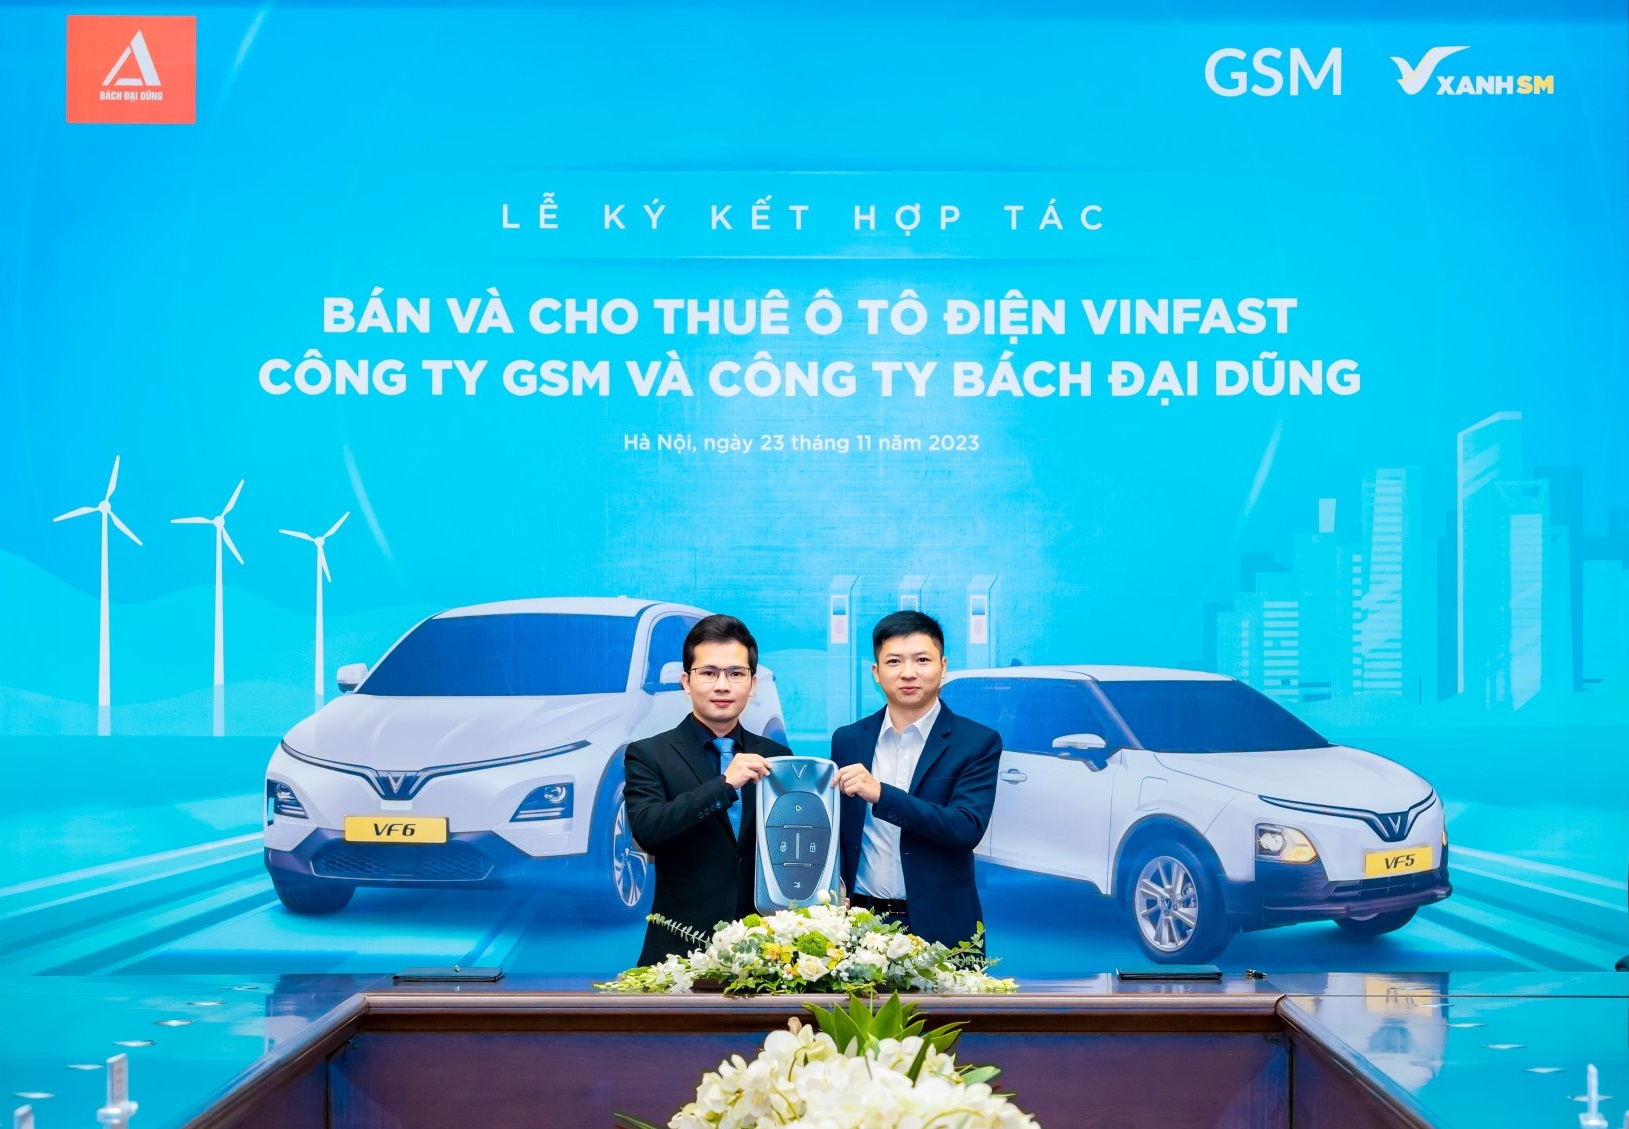 Hãng taxi thuần điện đầu tiên tại Hà Tĩnh thuê và mua 300 xe điện VinFast - Ảnh 1.